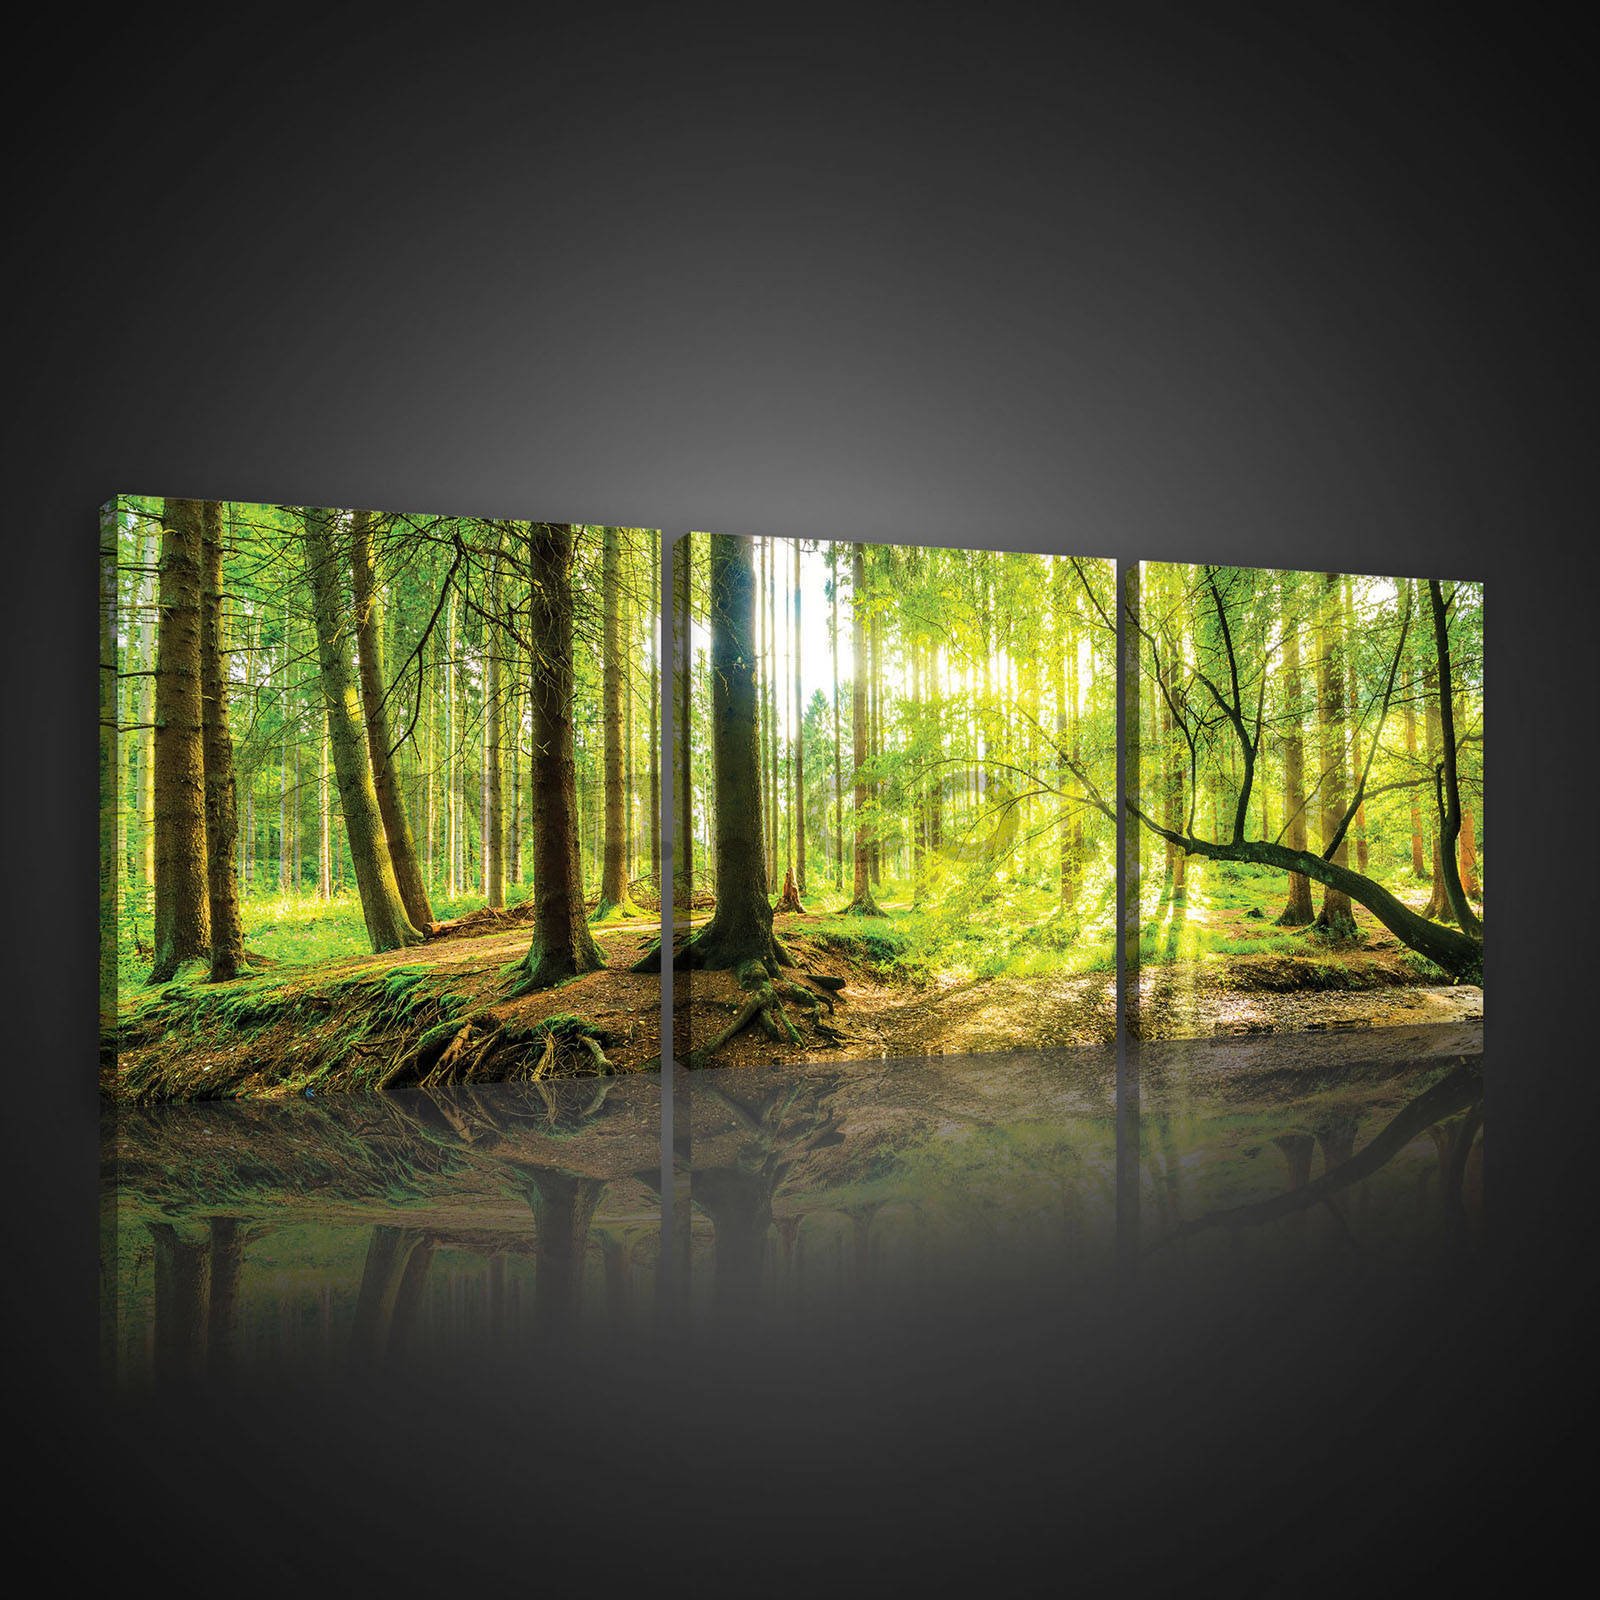 Painting on canvas: Floodplain forest - set 3pcs 25x25cm